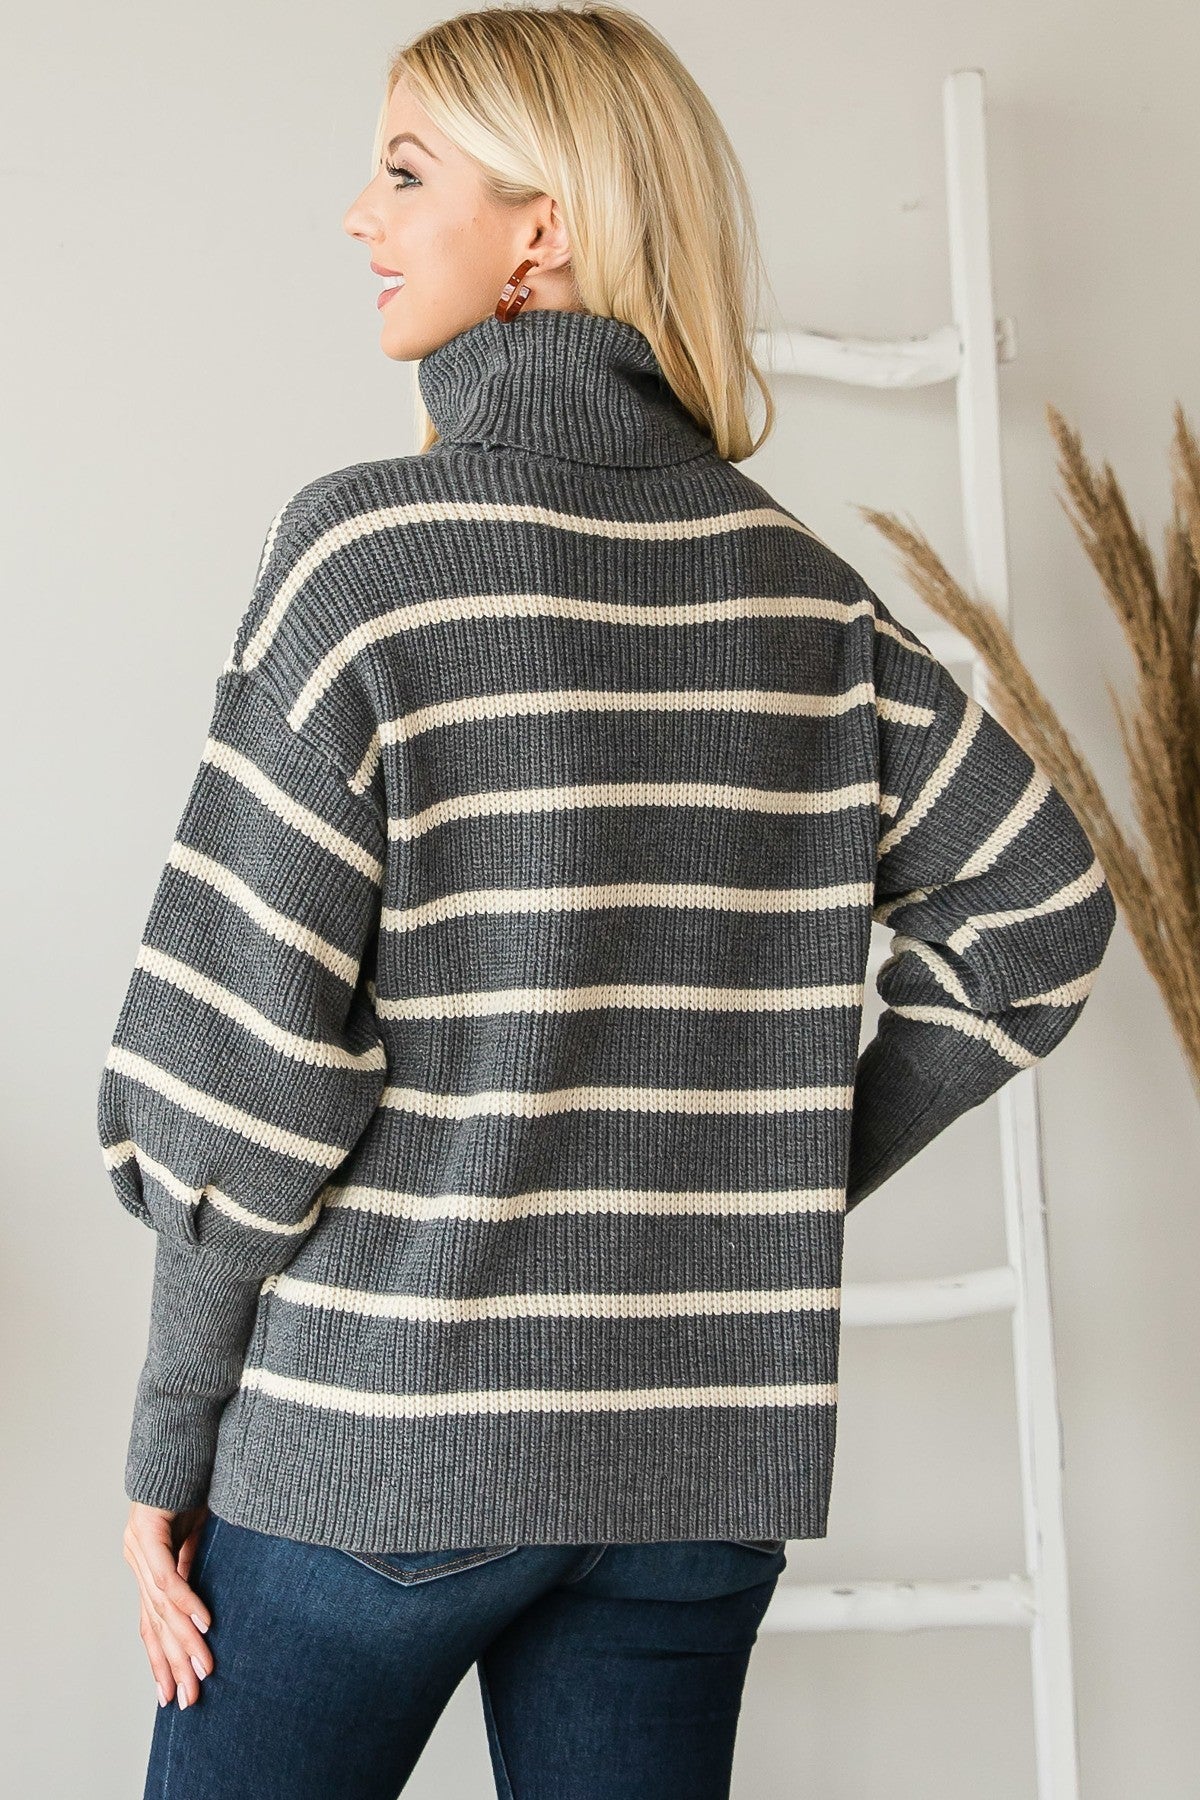 Heavy Knit Striped Turtle Neck Knit Sweater Shirts & Tops jehouze 